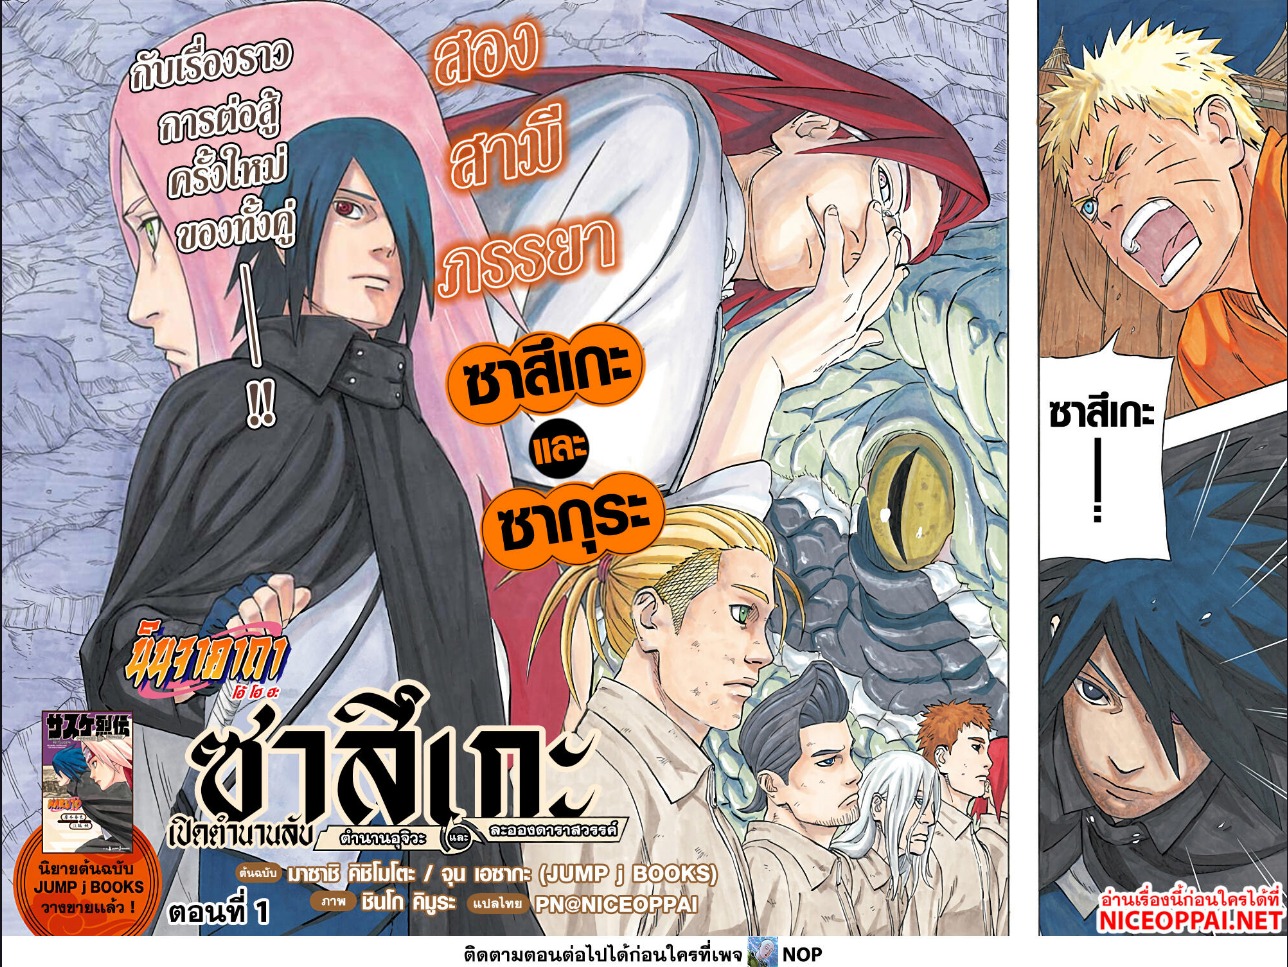 Naruto Sasuke’s Story The Uchiha and the Heavenly Stardust ตอนที่ 1 (2)